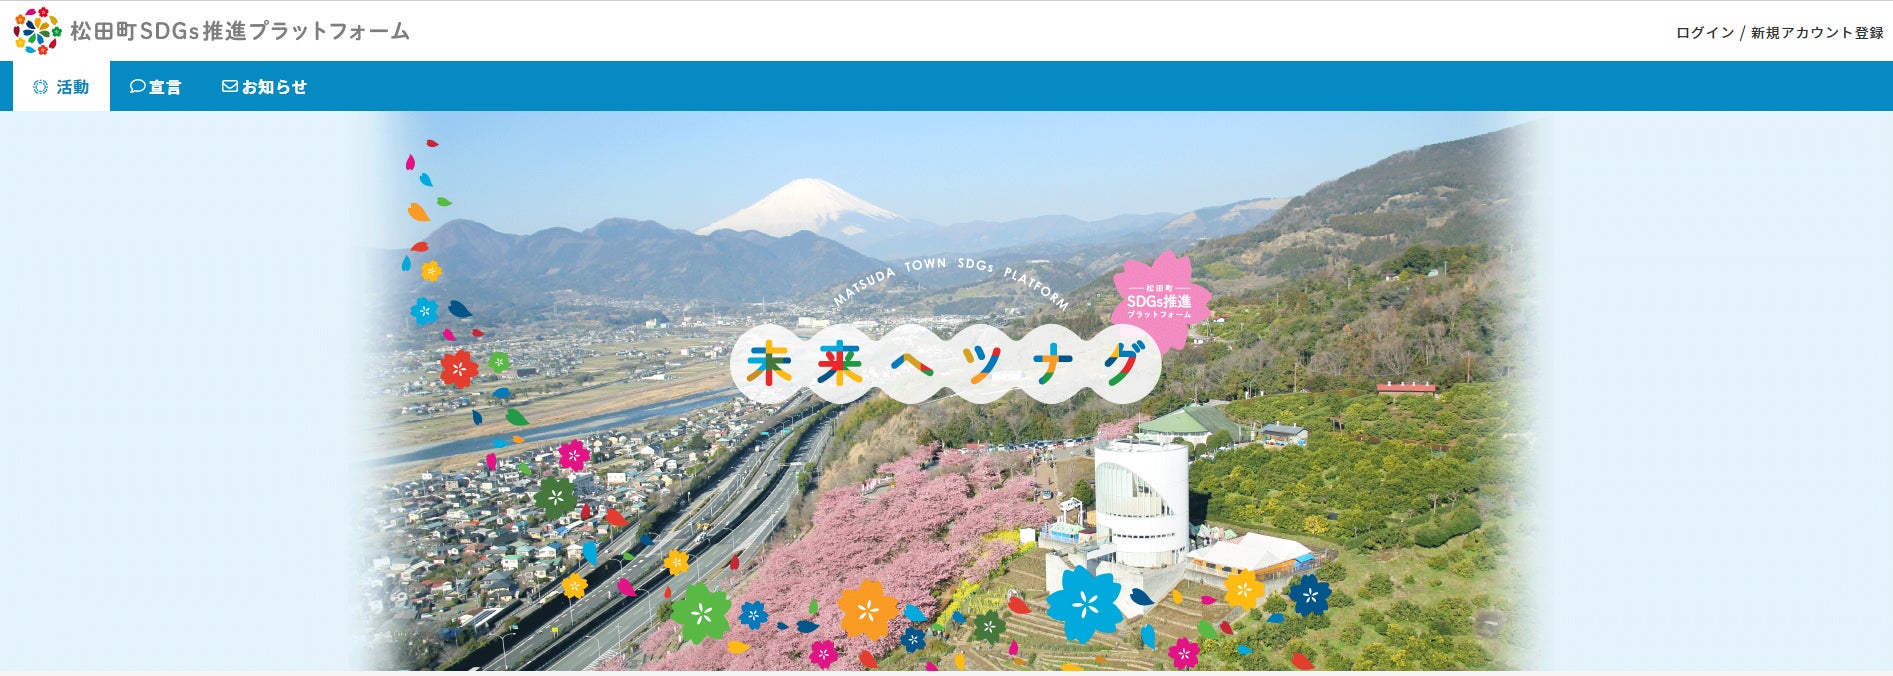 【初導入】地域課題の解決を支援するSDGsソリューション「グッドシティ」が神奈川県松田町にて導入のサブ画像1